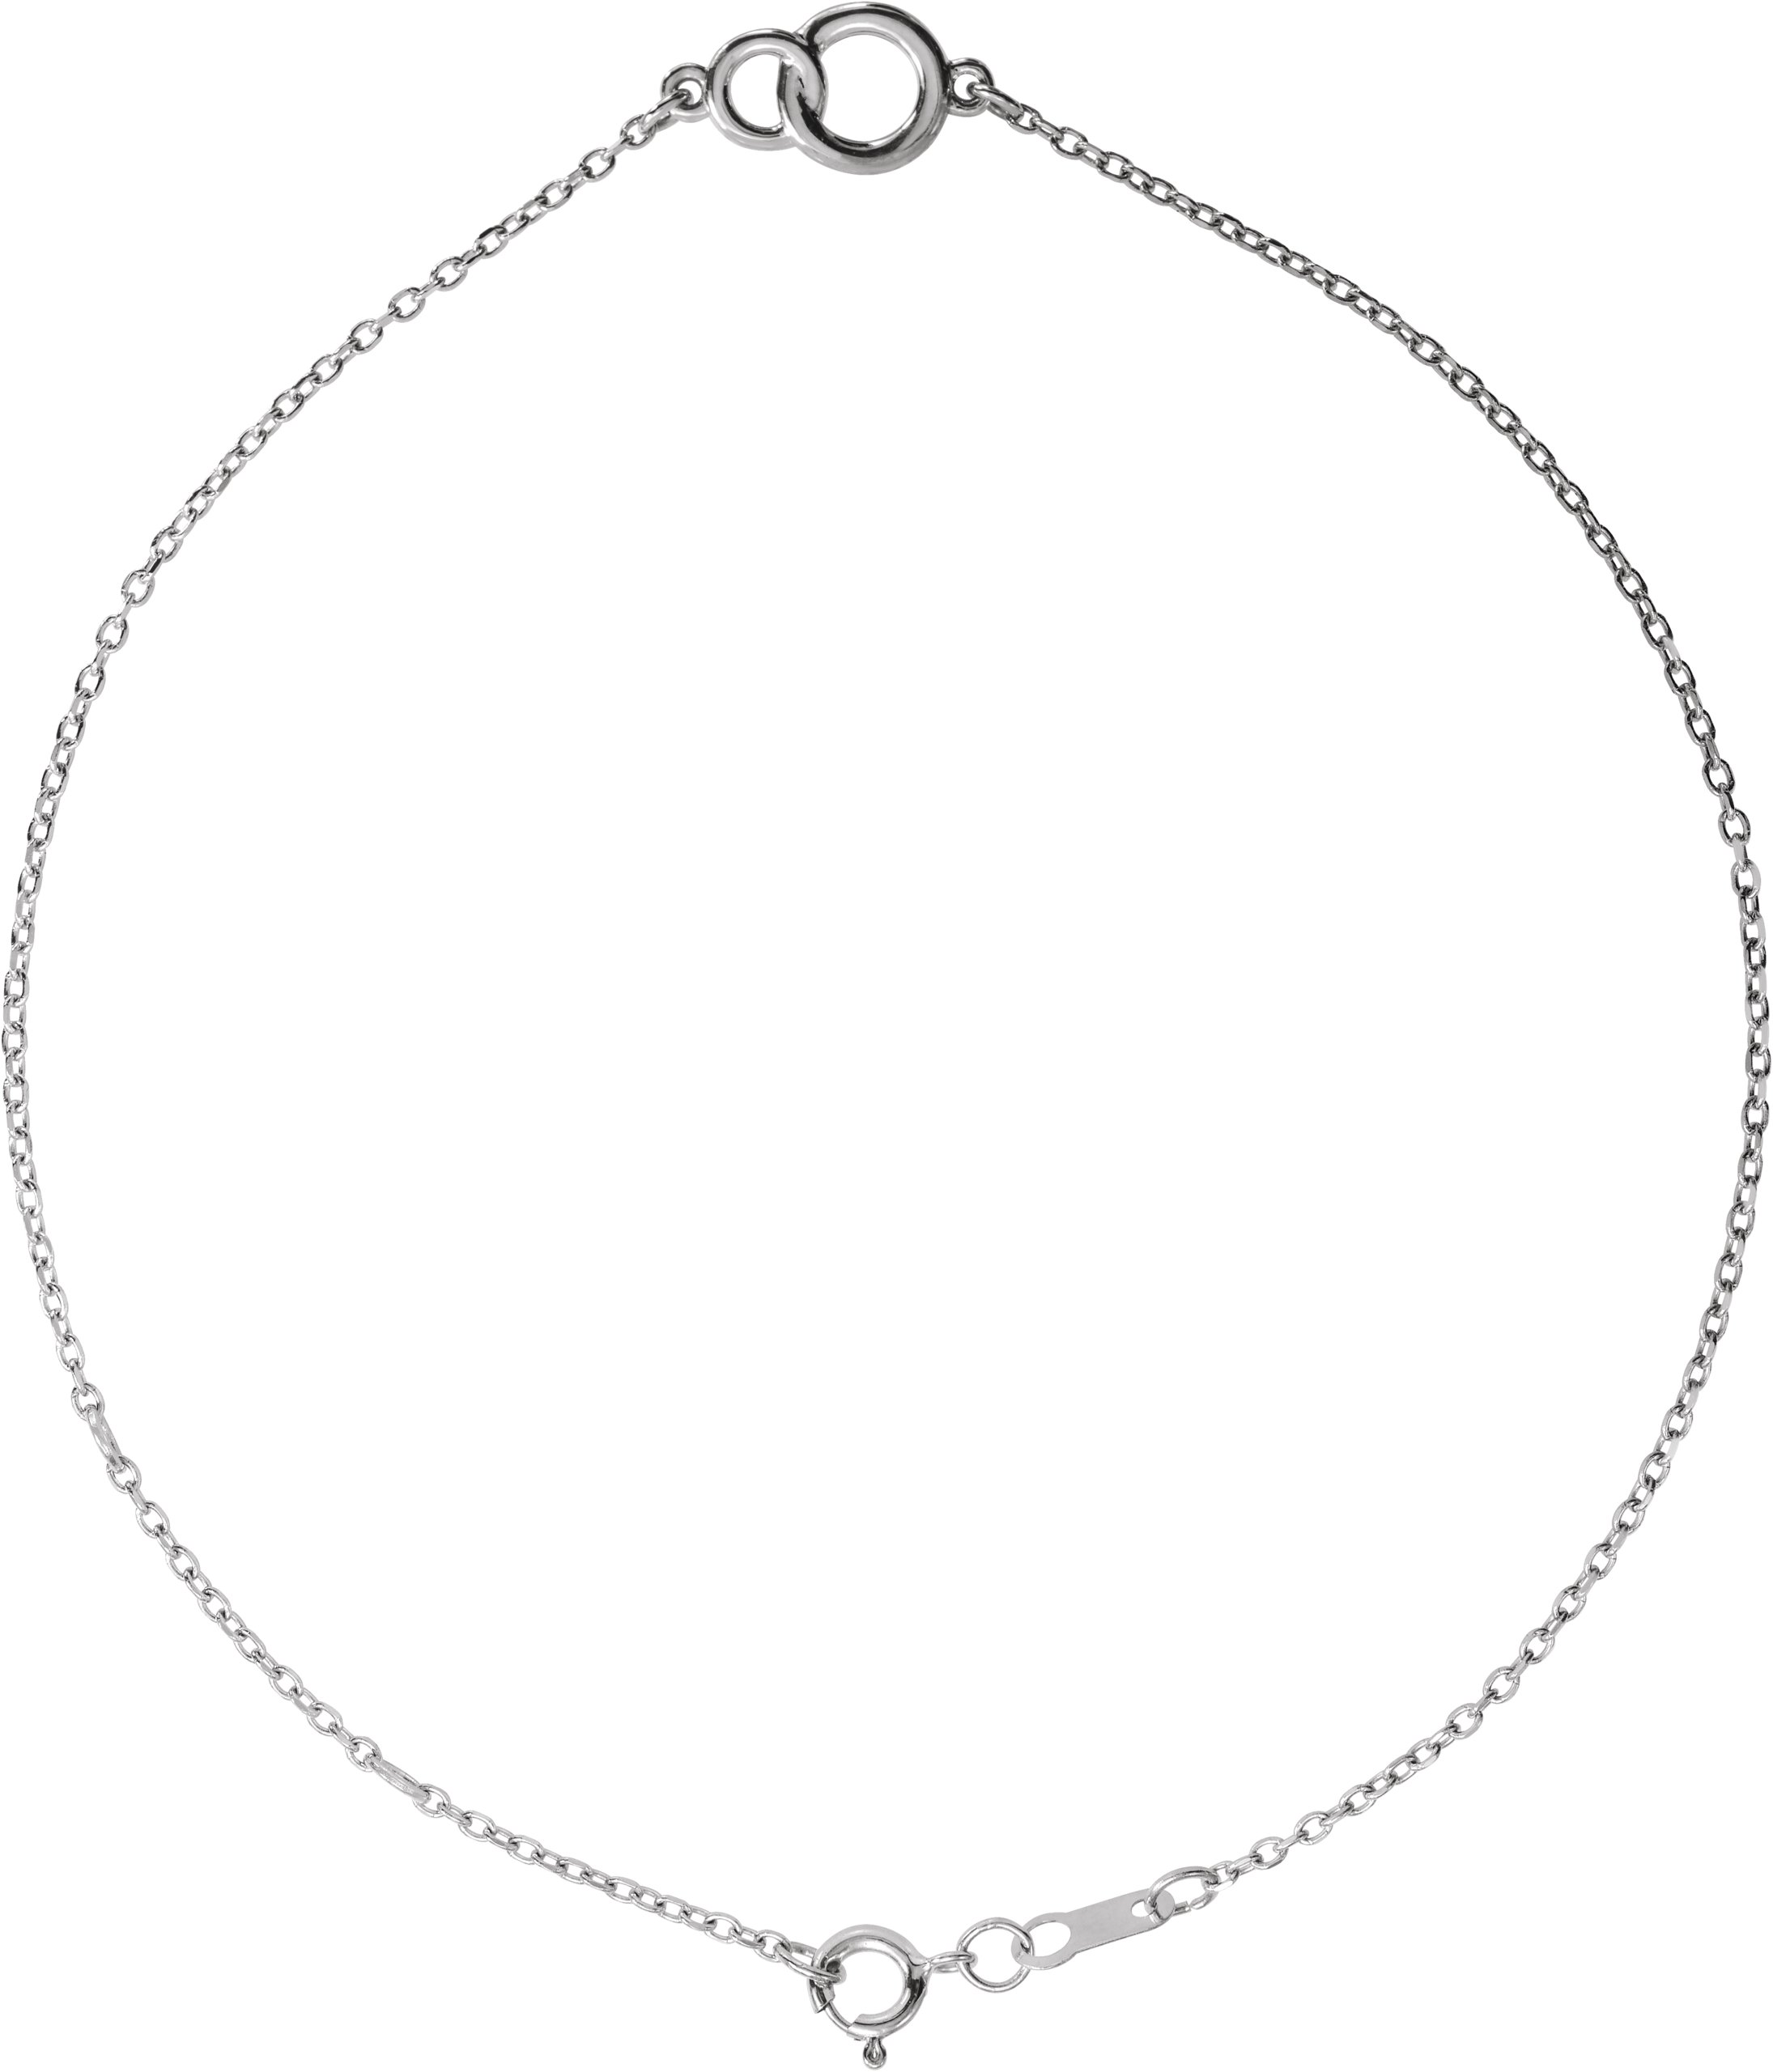 Sterling Silver Interlocking Circle Bracelet